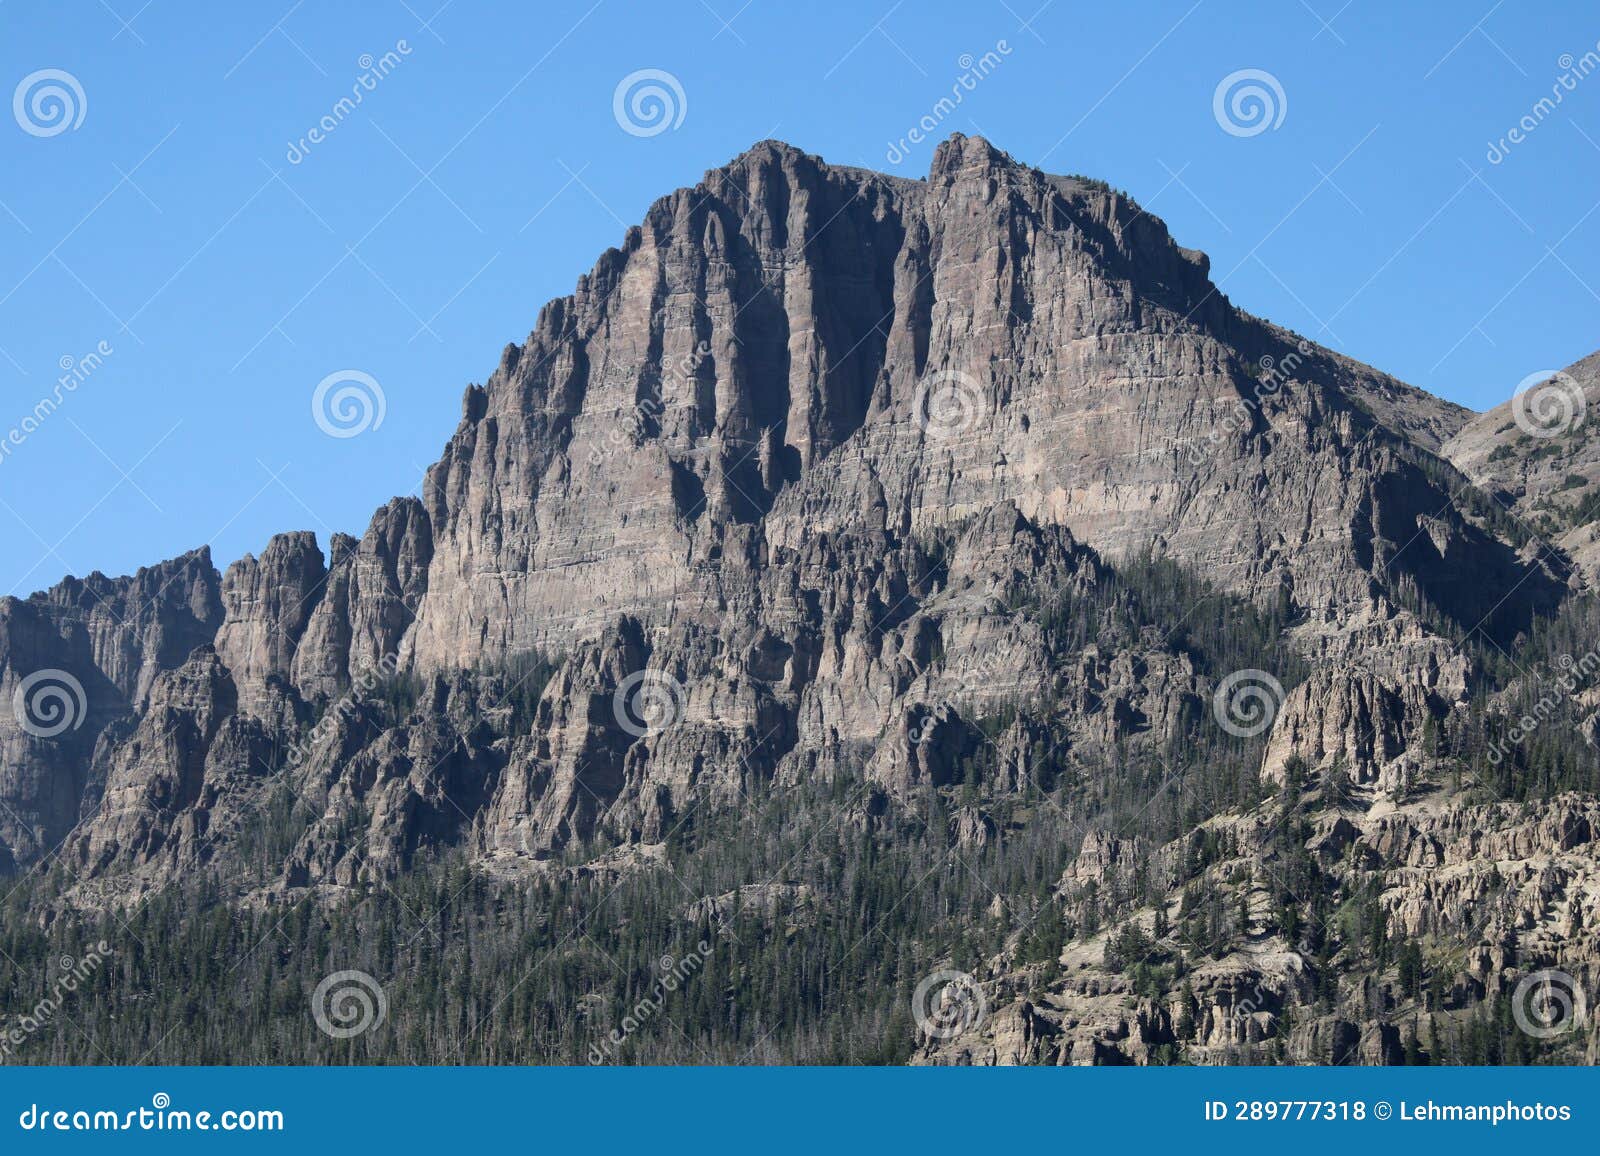 wilderness mountain peak absaroka range